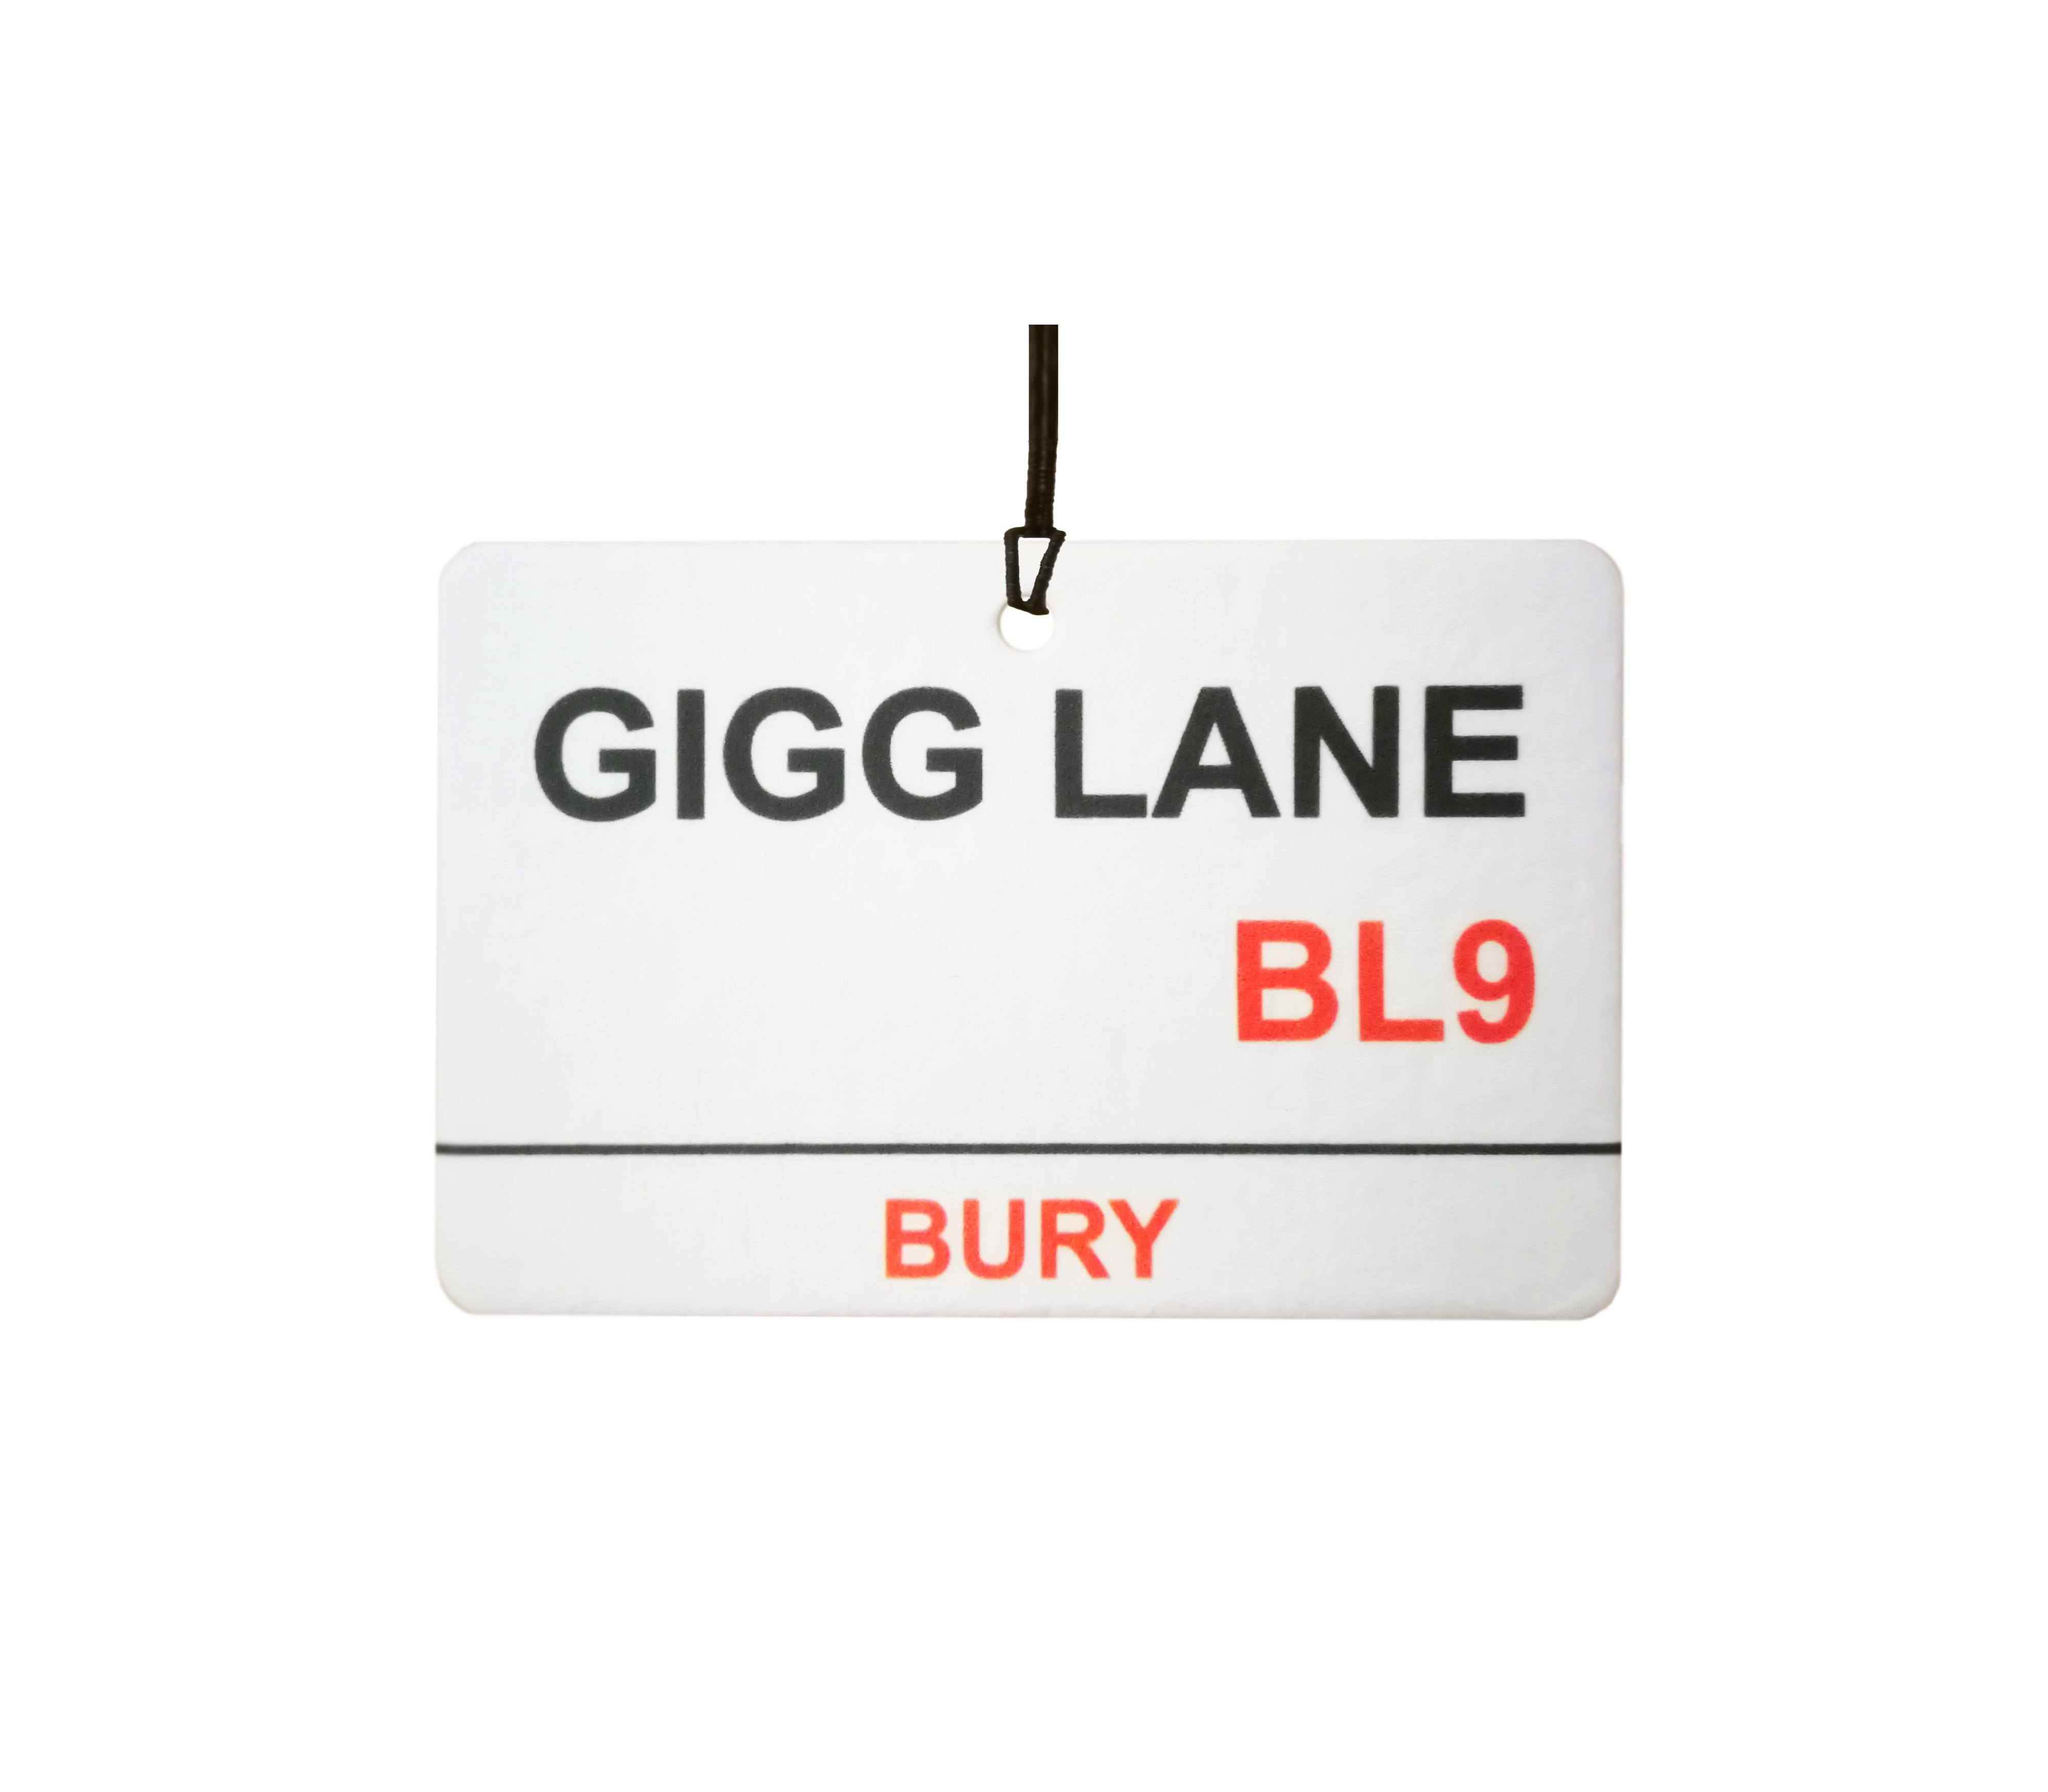 Bury / Gigg Lane Street Sign